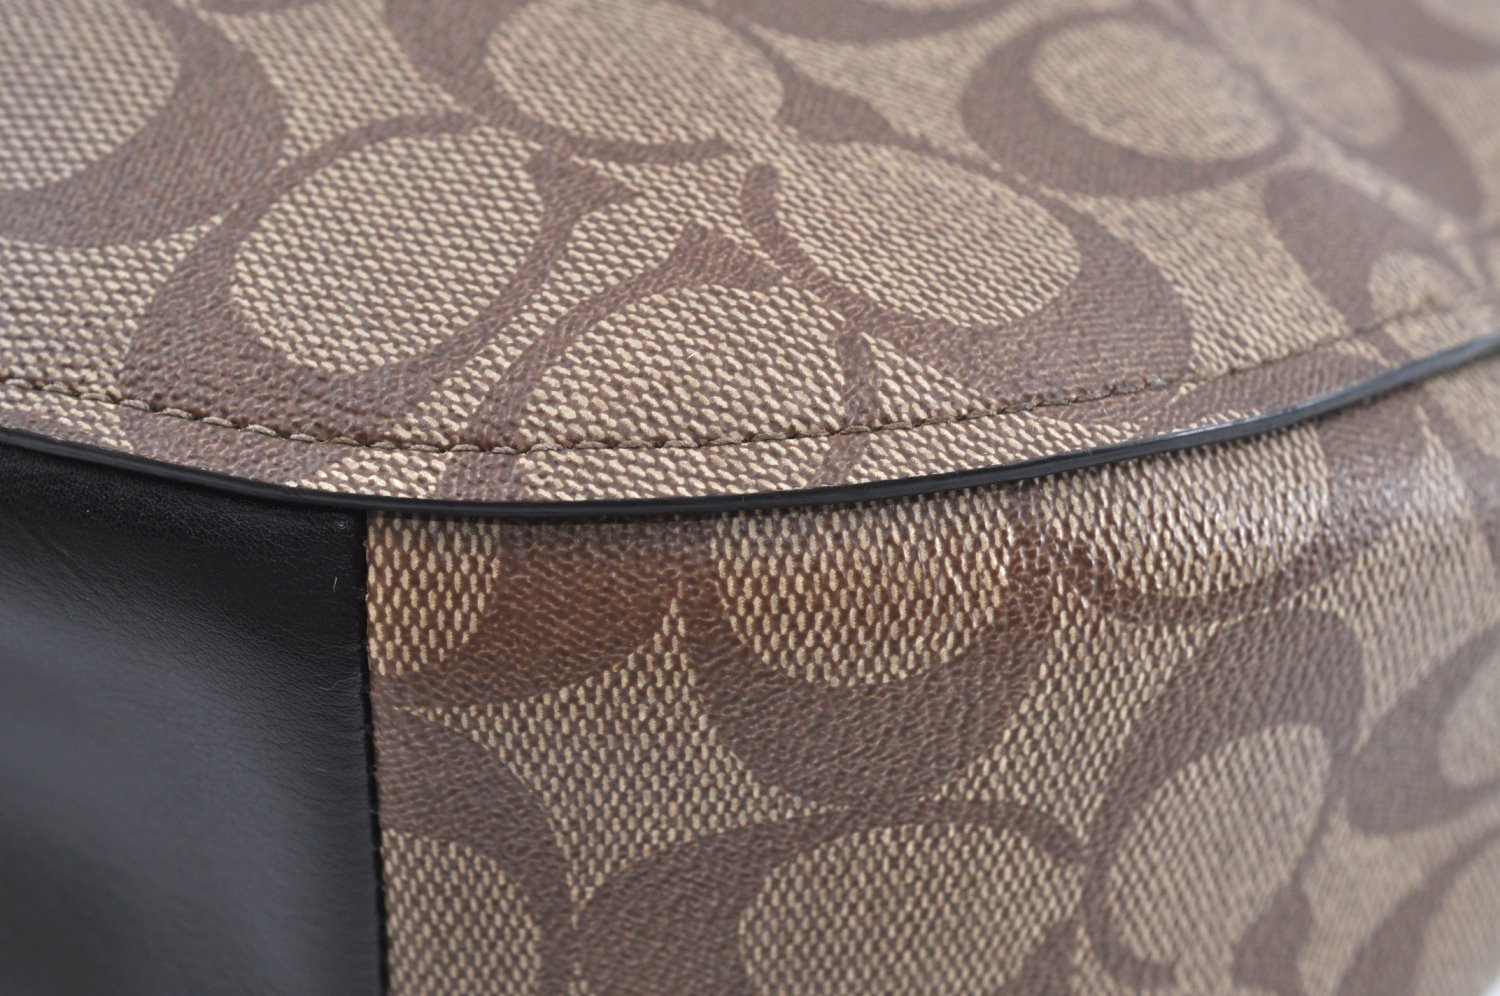 Authentic COACH Signature Shoulder Bag PVC Leather F39527 Brown K6616